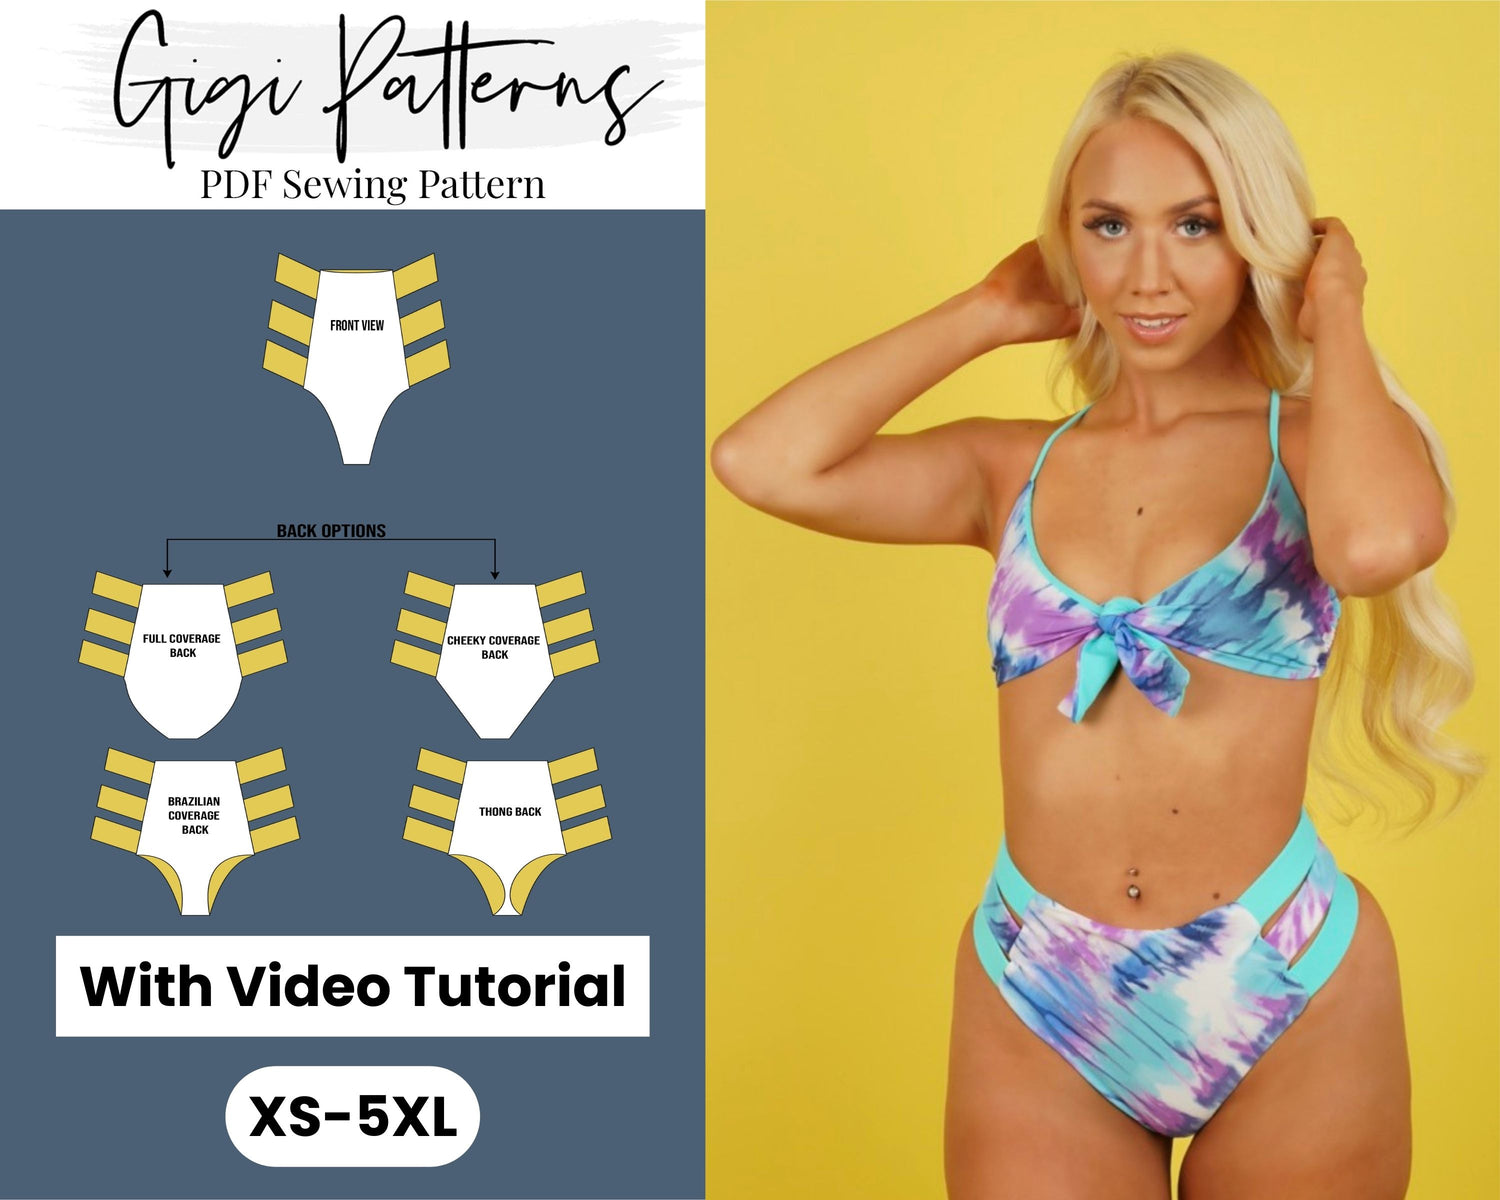 GigiPatterns - PDF Sewing Patterns!